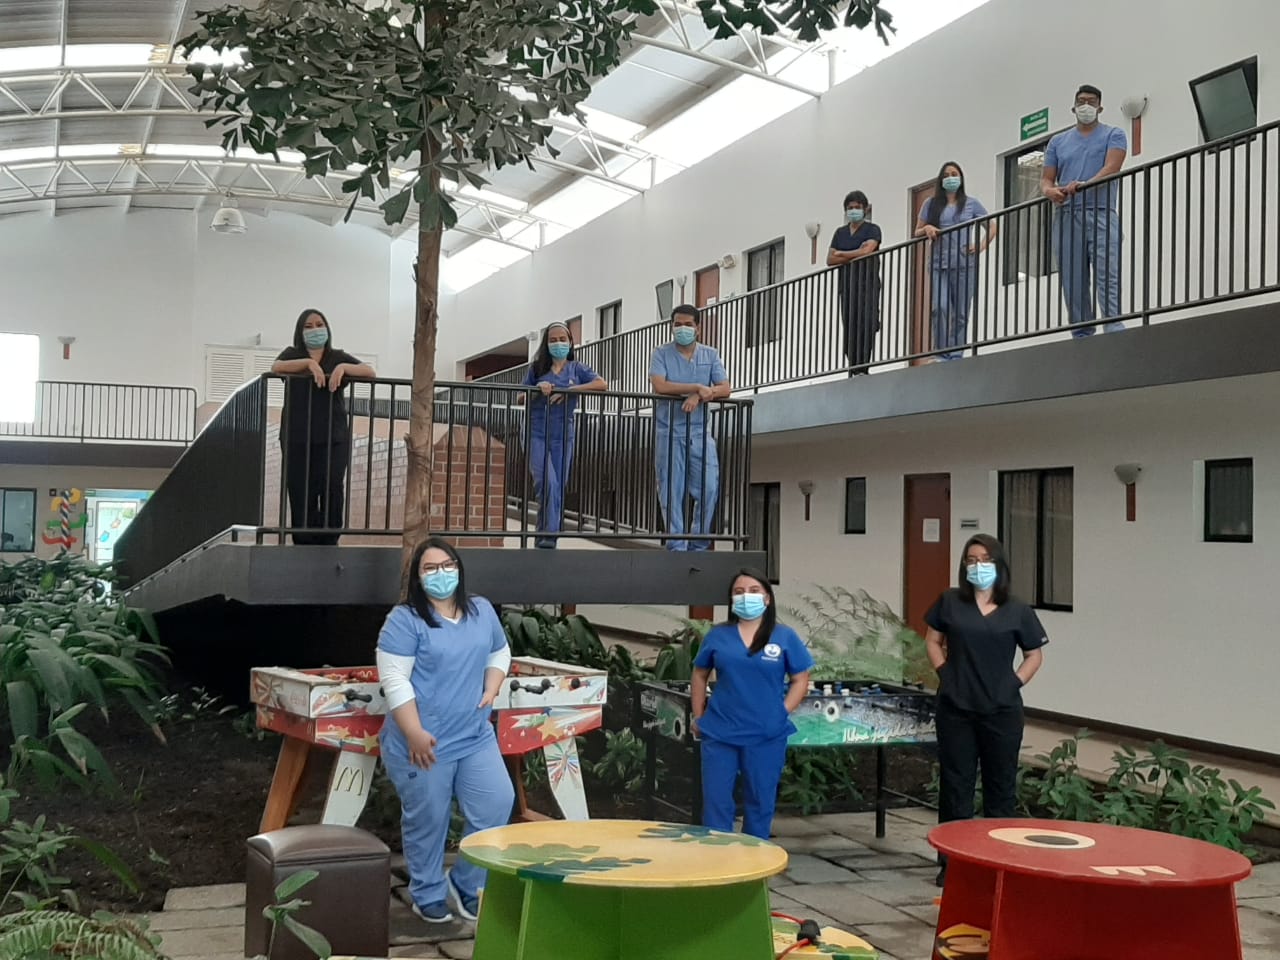 La Casa Ronald McDonald se ha convertido en un segundo hogar para los médicos que trabajan en los hospitales temporales. (Foto Prensa Libre: Andrea Domínguez)